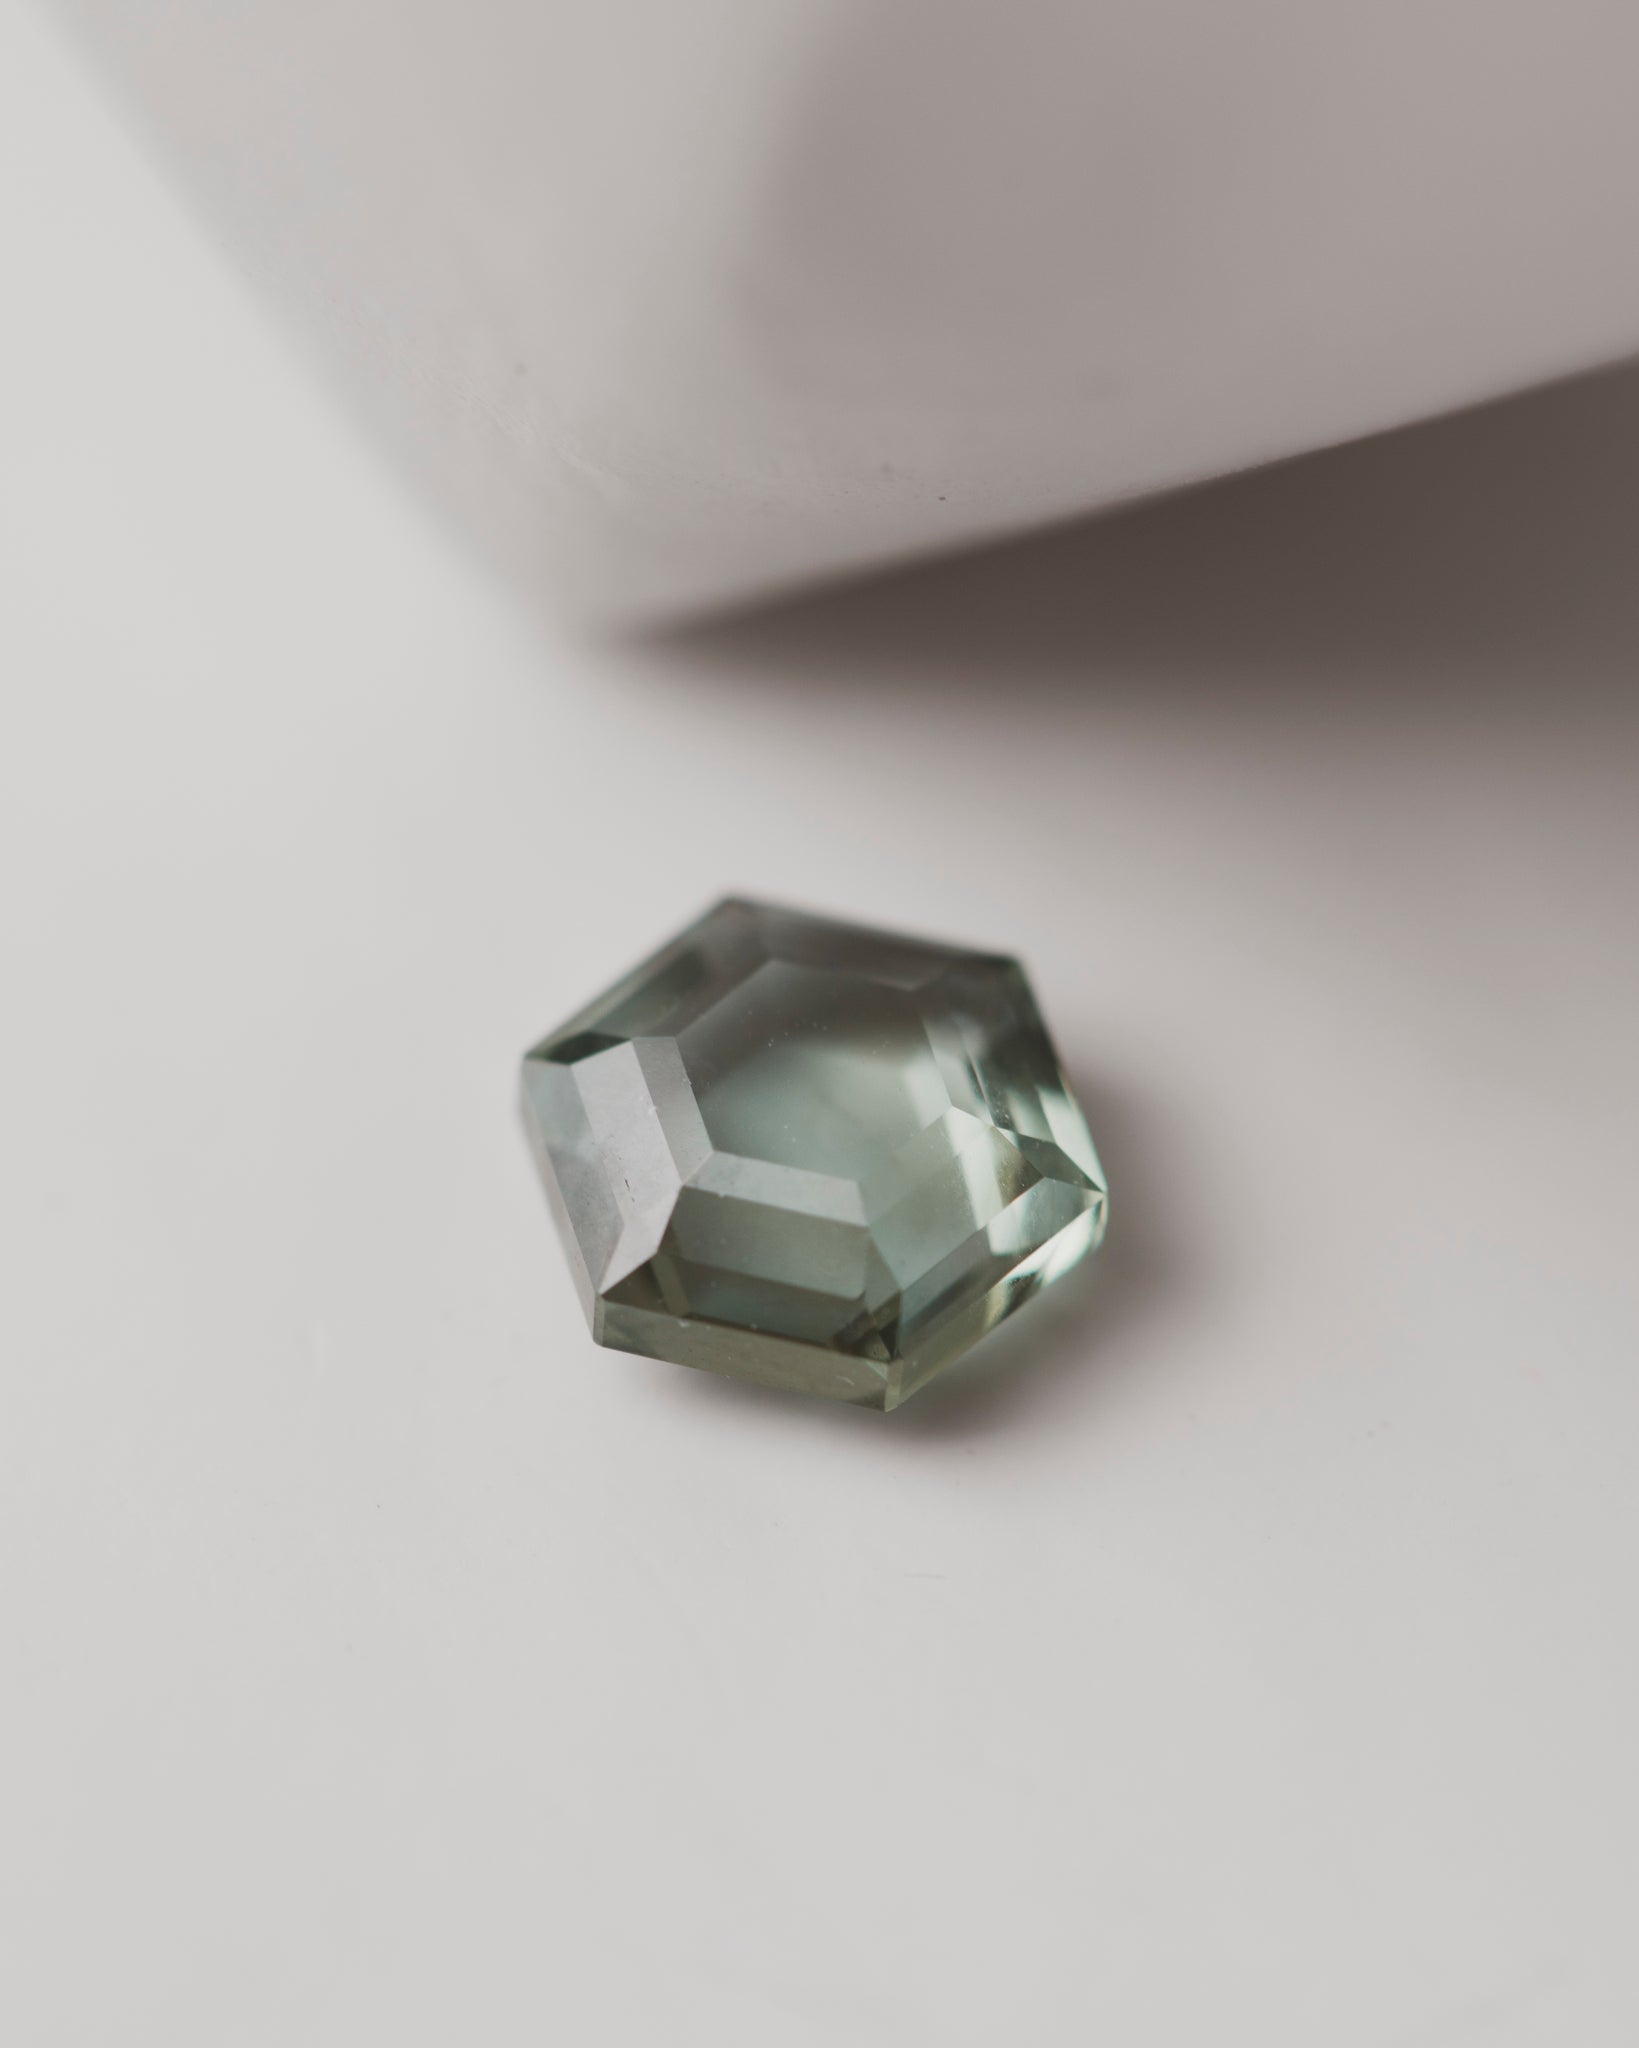 1.9 carat Green Hexagonal Tablet Cut Sapphire